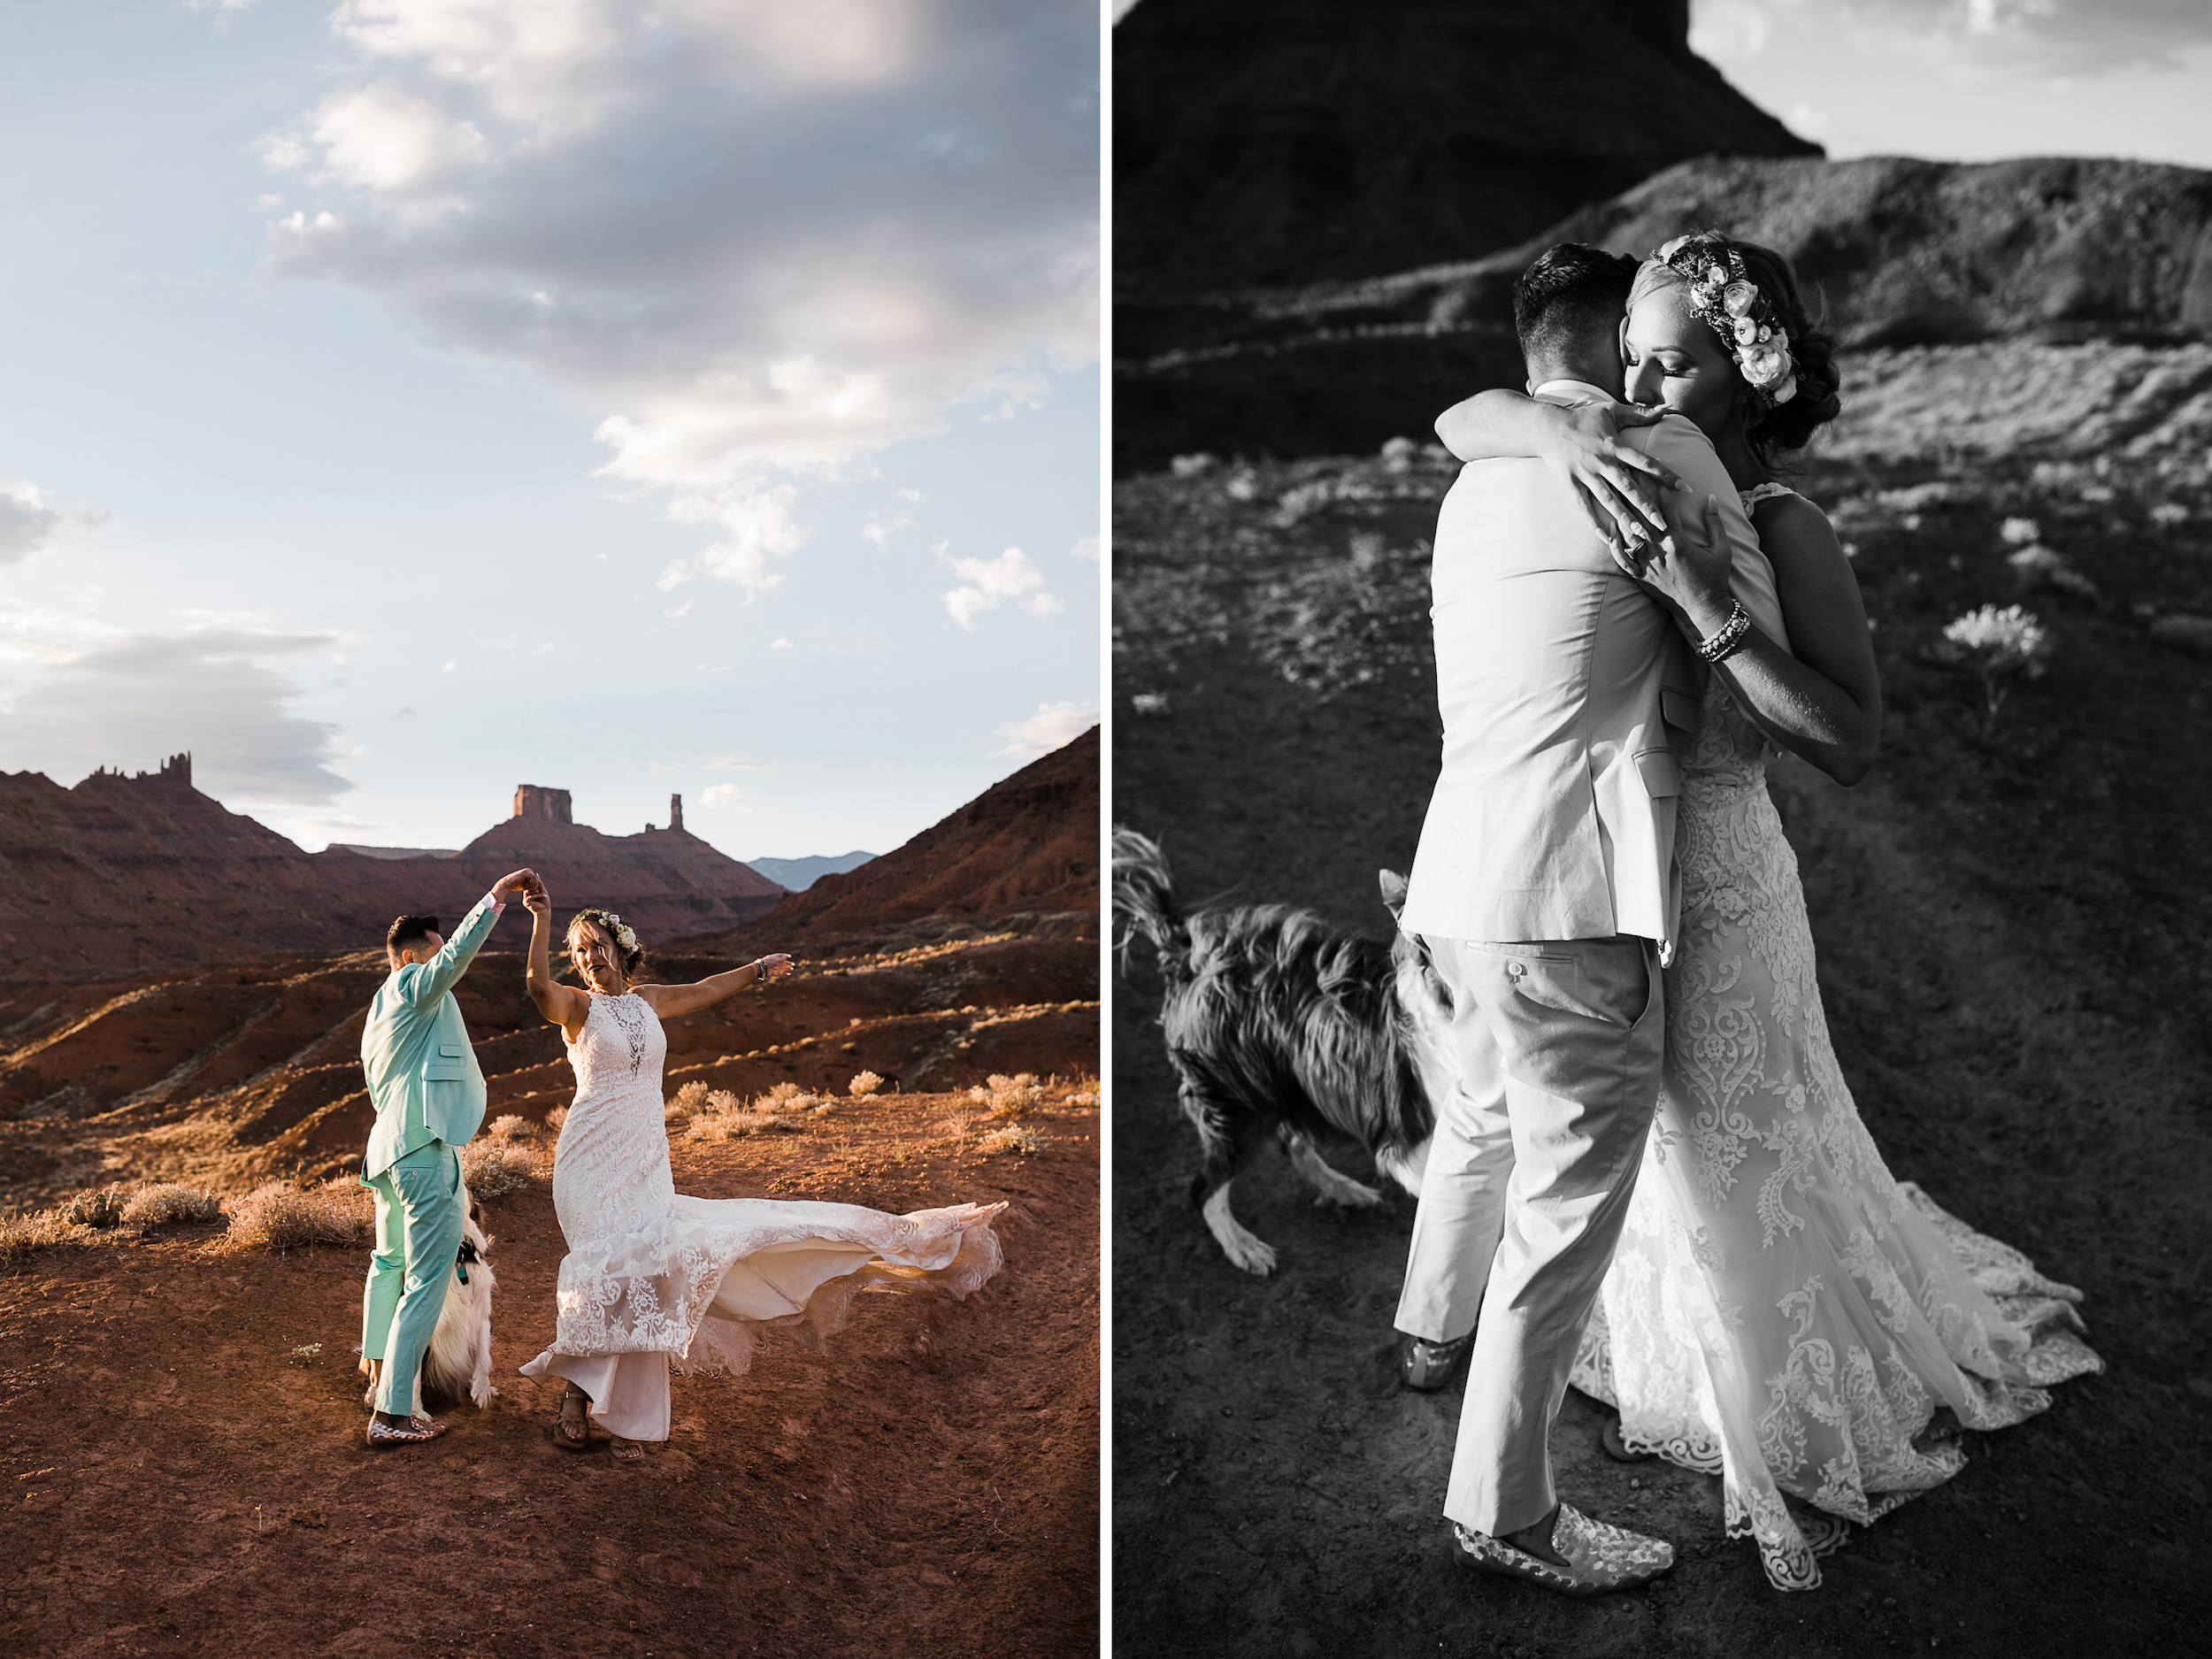 sunrise adventure wedding session | moab, utah elopement photographer | desert wedding inspiration | blue tux | mint colored suit | unique groom | the hearnes adventure photography